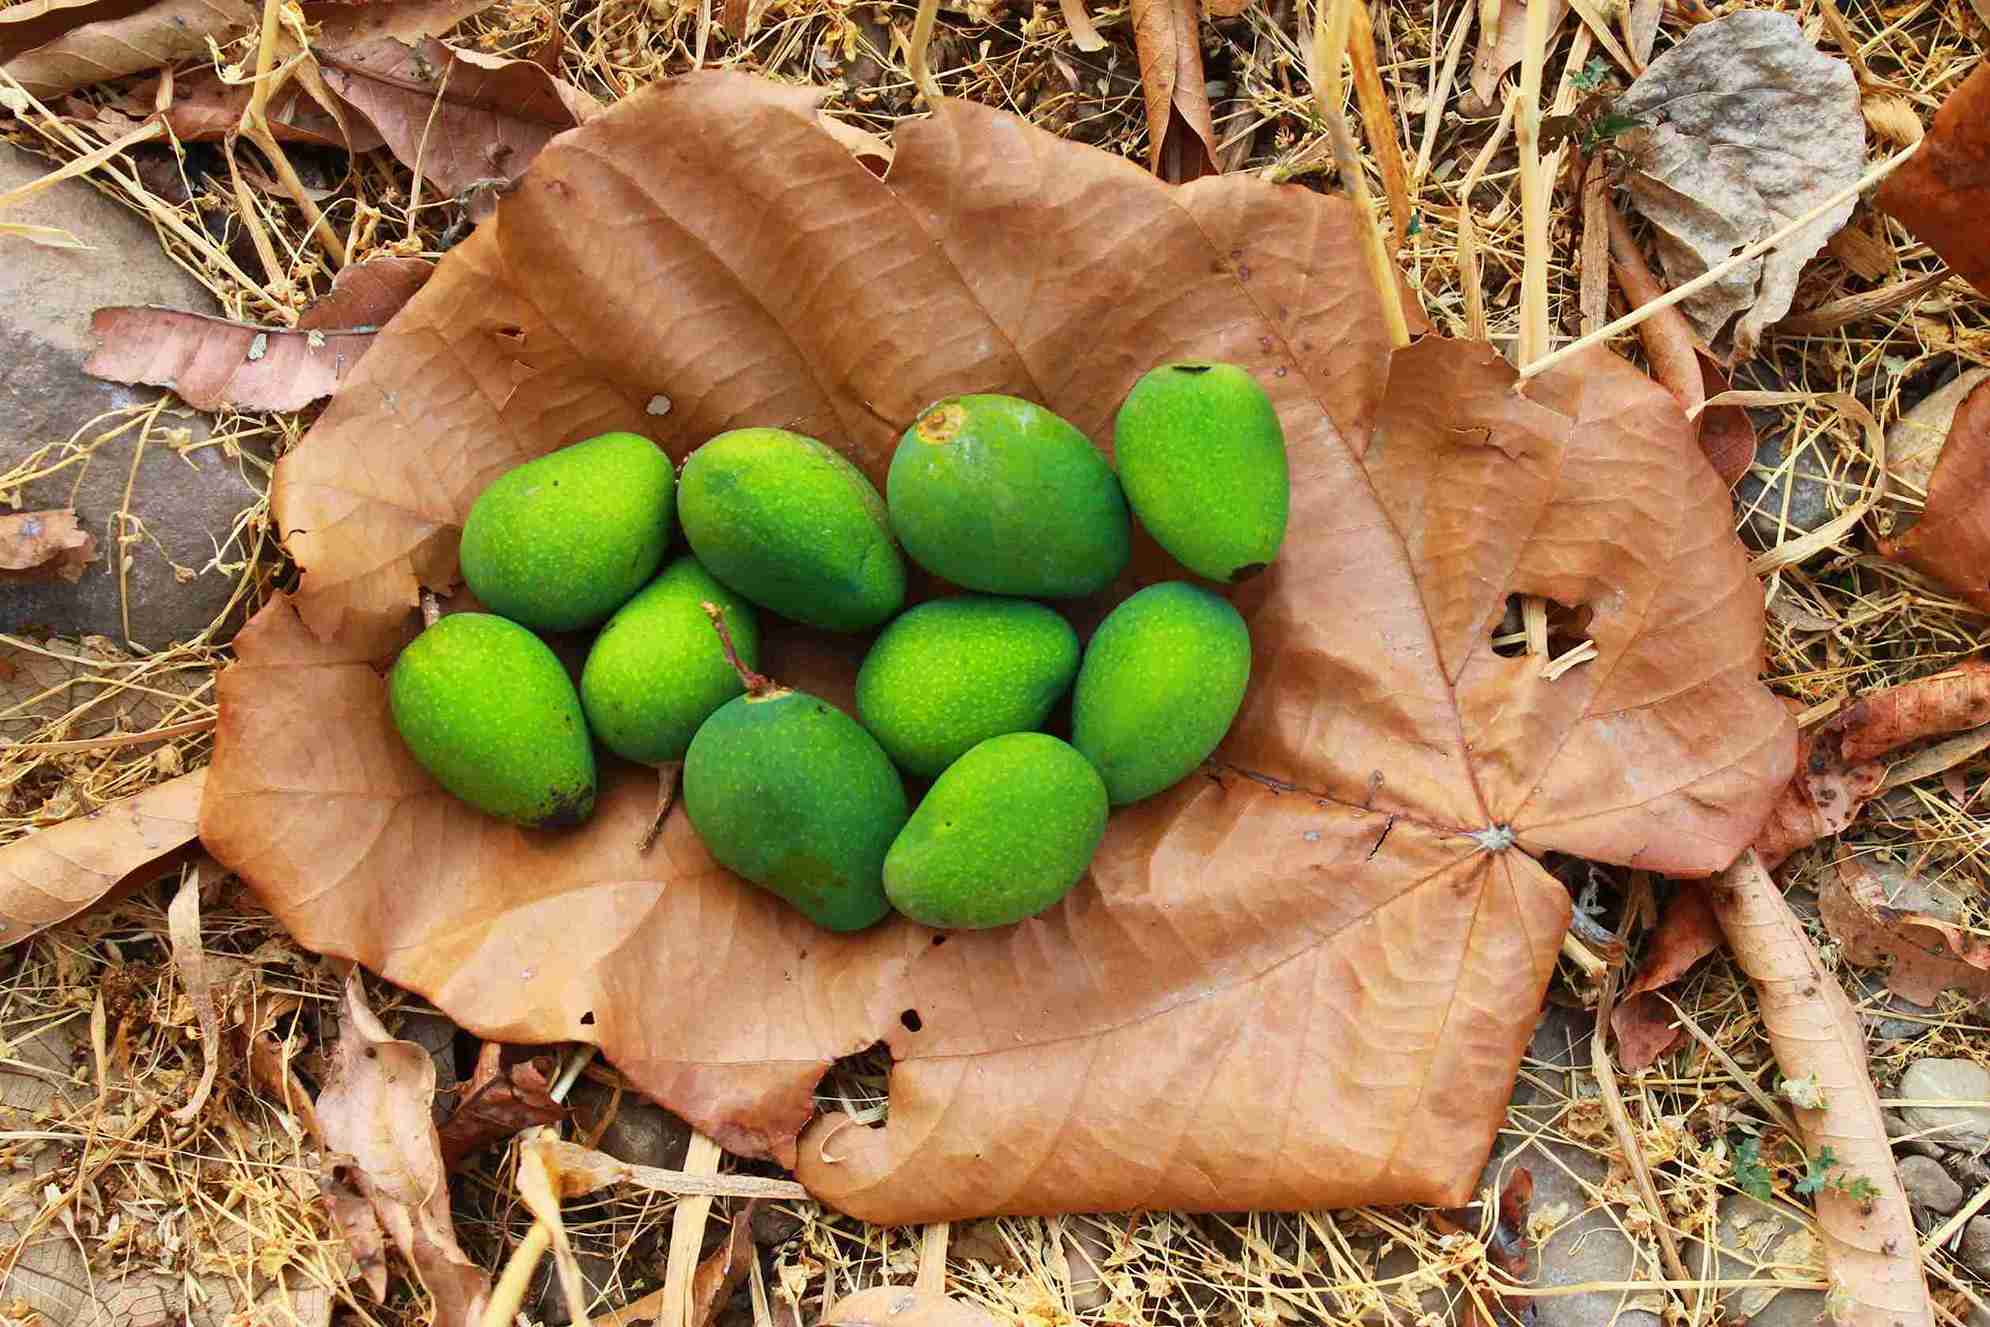 Los mangos crudos cultivados en su finca.